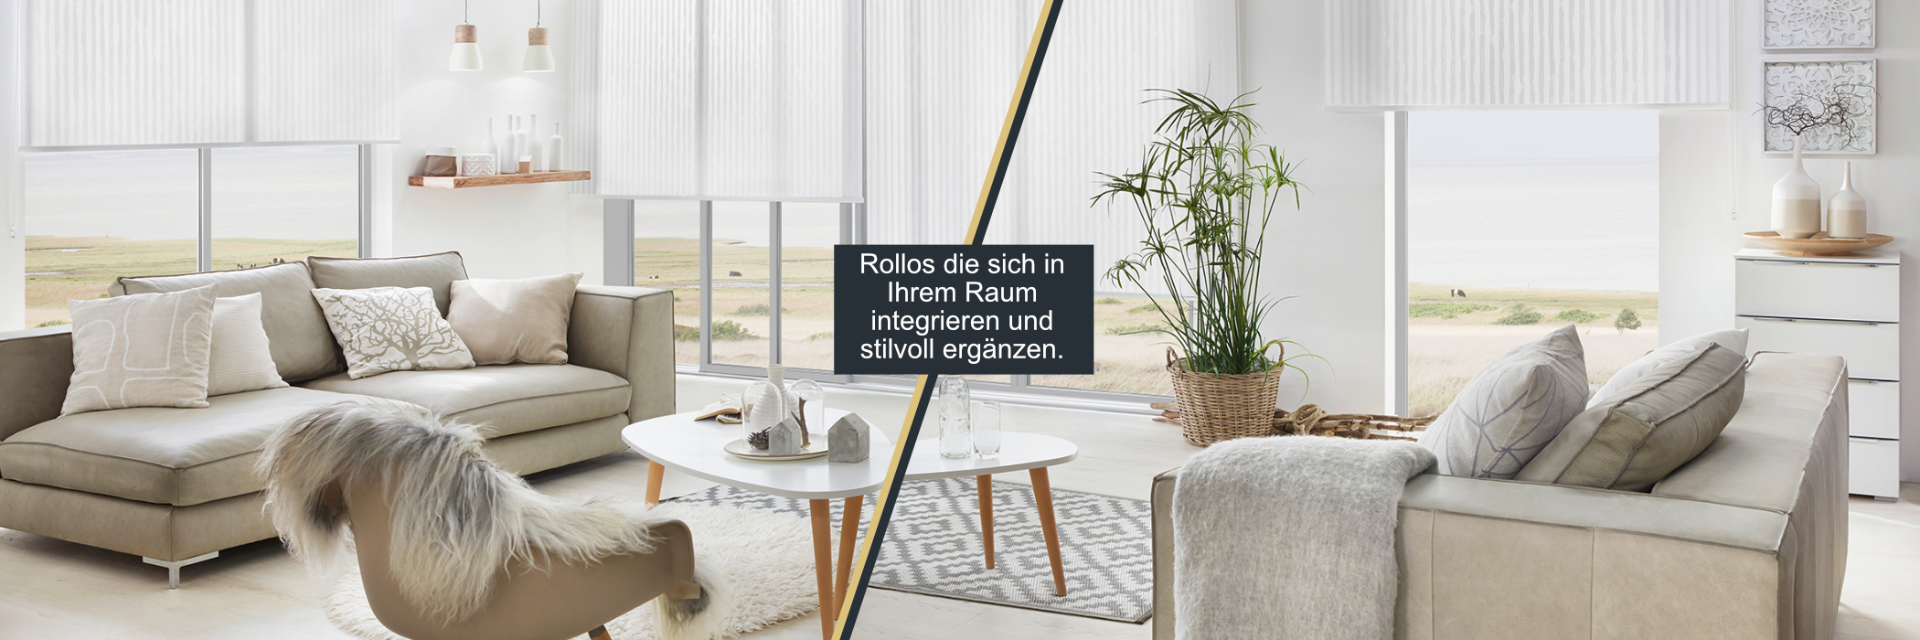 ondeco Rollo für Wand-Deckenmontage, Design Cool Sichtschutz,  Seitenzugrollo Sonnenschutz Fenster innen lichtdurchlässig und Blickdicht -  Grau 